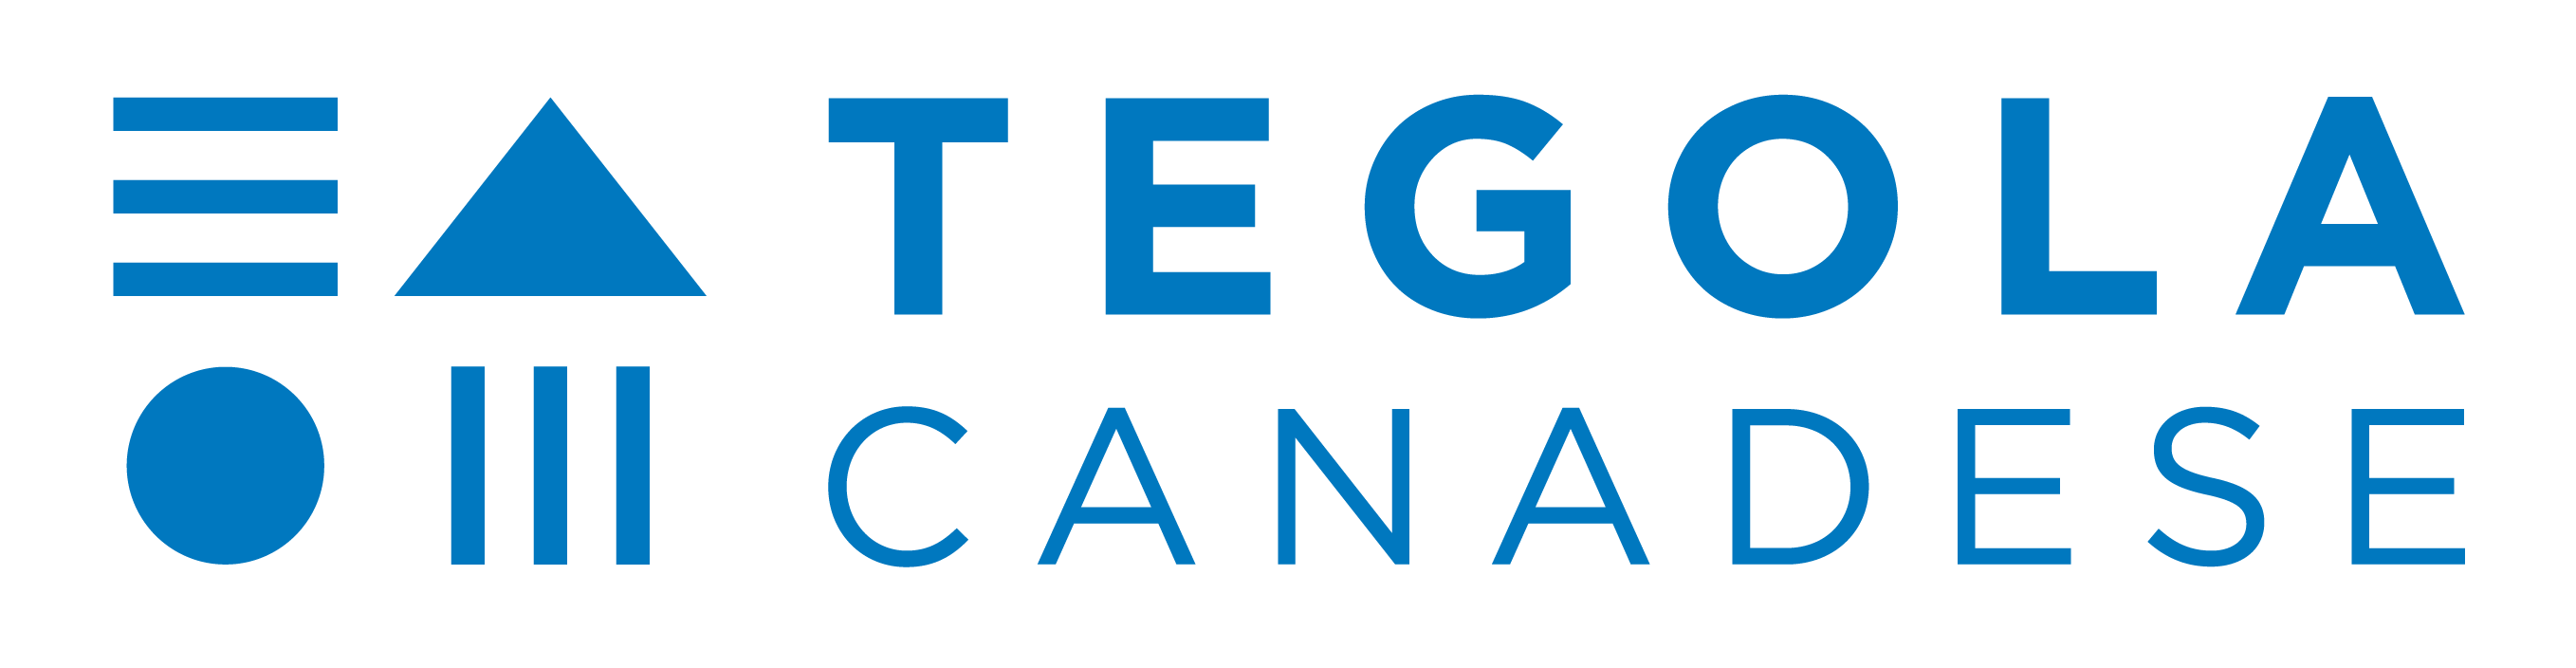 Tegola Canadese - stavební elementy